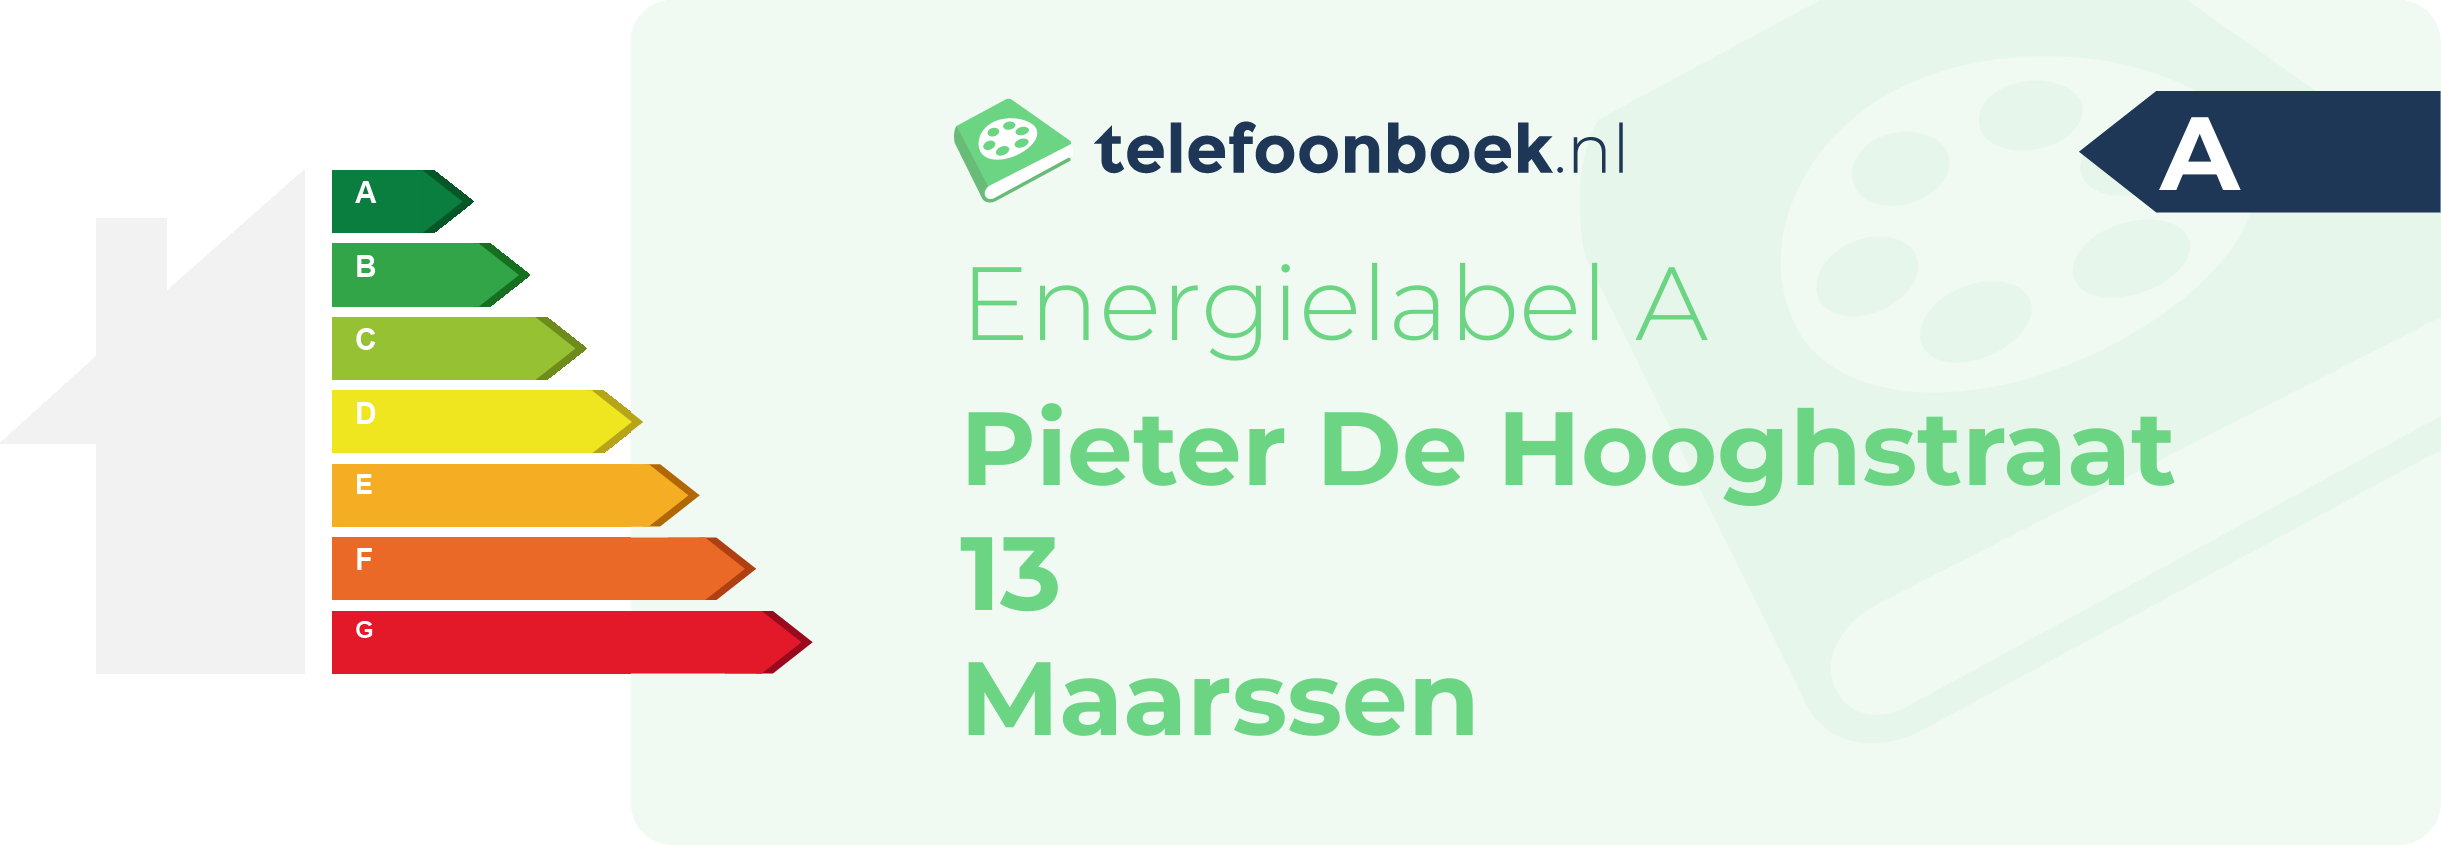 Energielabel Pieter De Hooghstraat 13 Maarssen